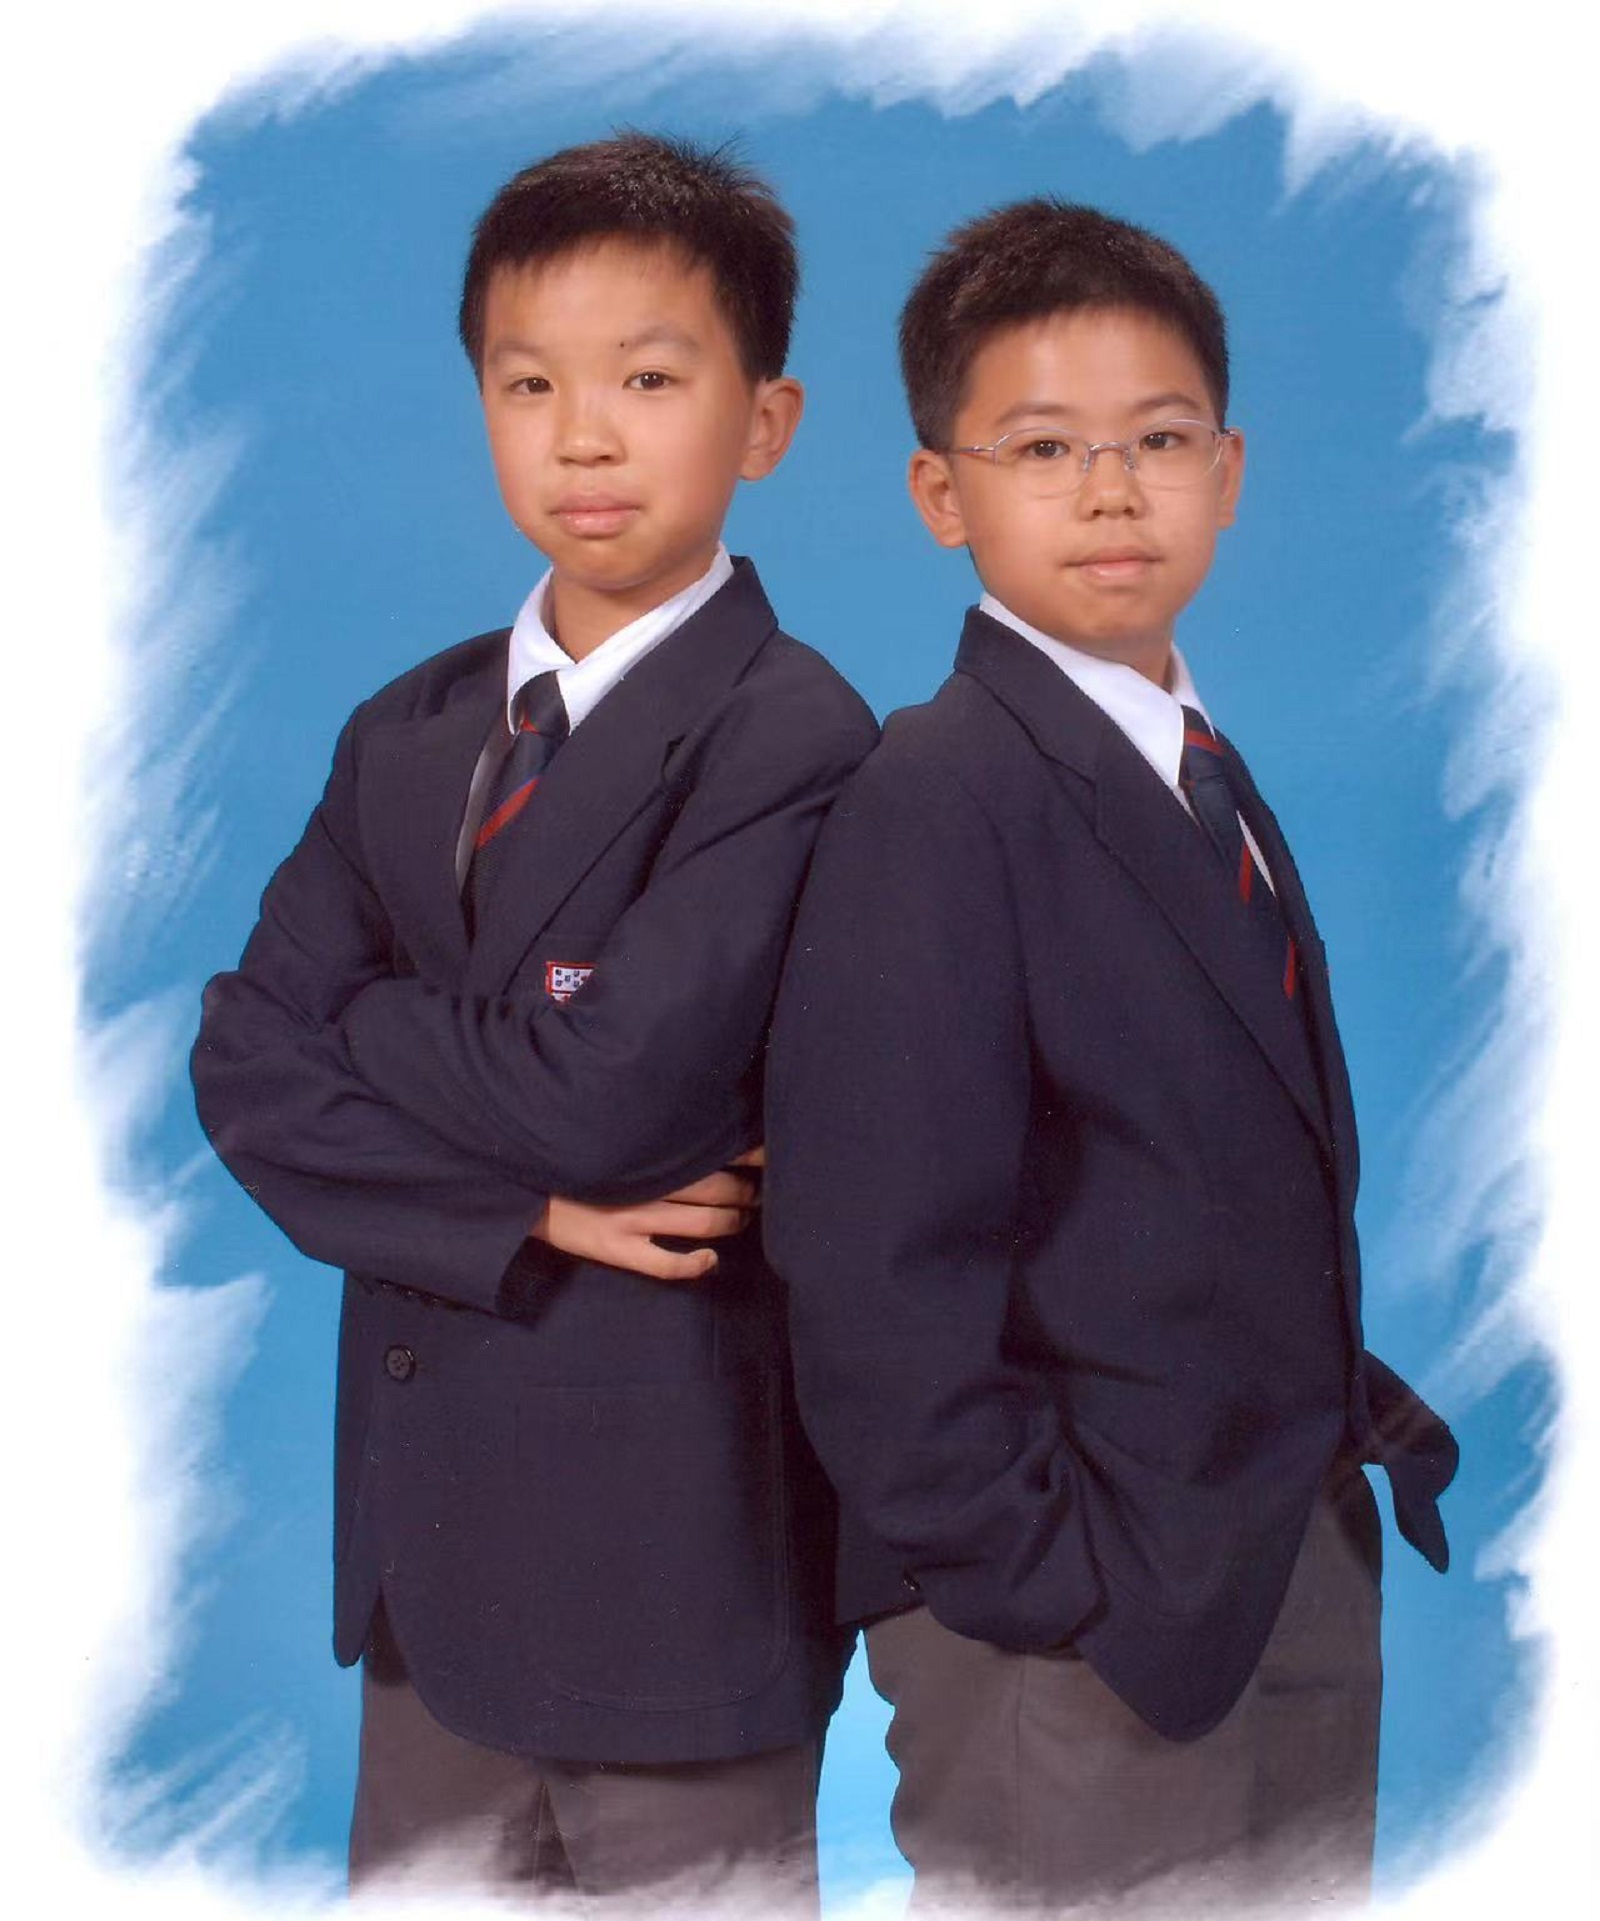 Kim和他的弟弟Ben在学校拍摄照片